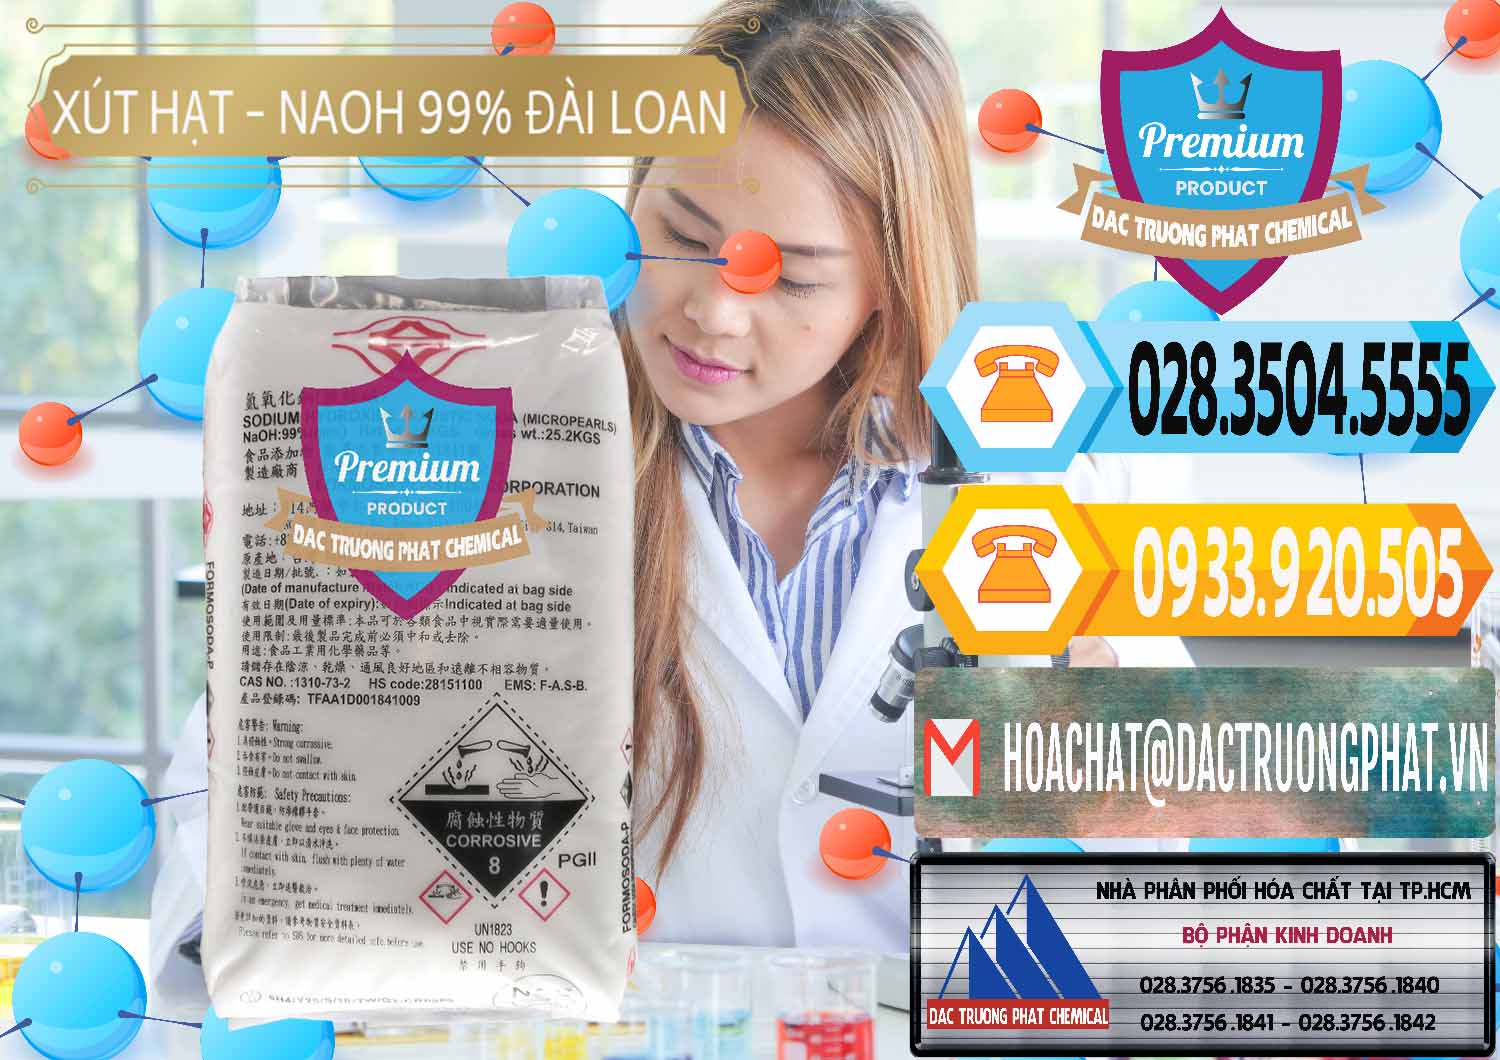 Chuyên cung cấp & bán Xút Hạt - NaOH Bột 99% Đài Loan Taiwan Formosa - 0167 - Cty cung cấp ( nhập khẩu ) hóa chất tại TP.HCM - hoachattayrua.net